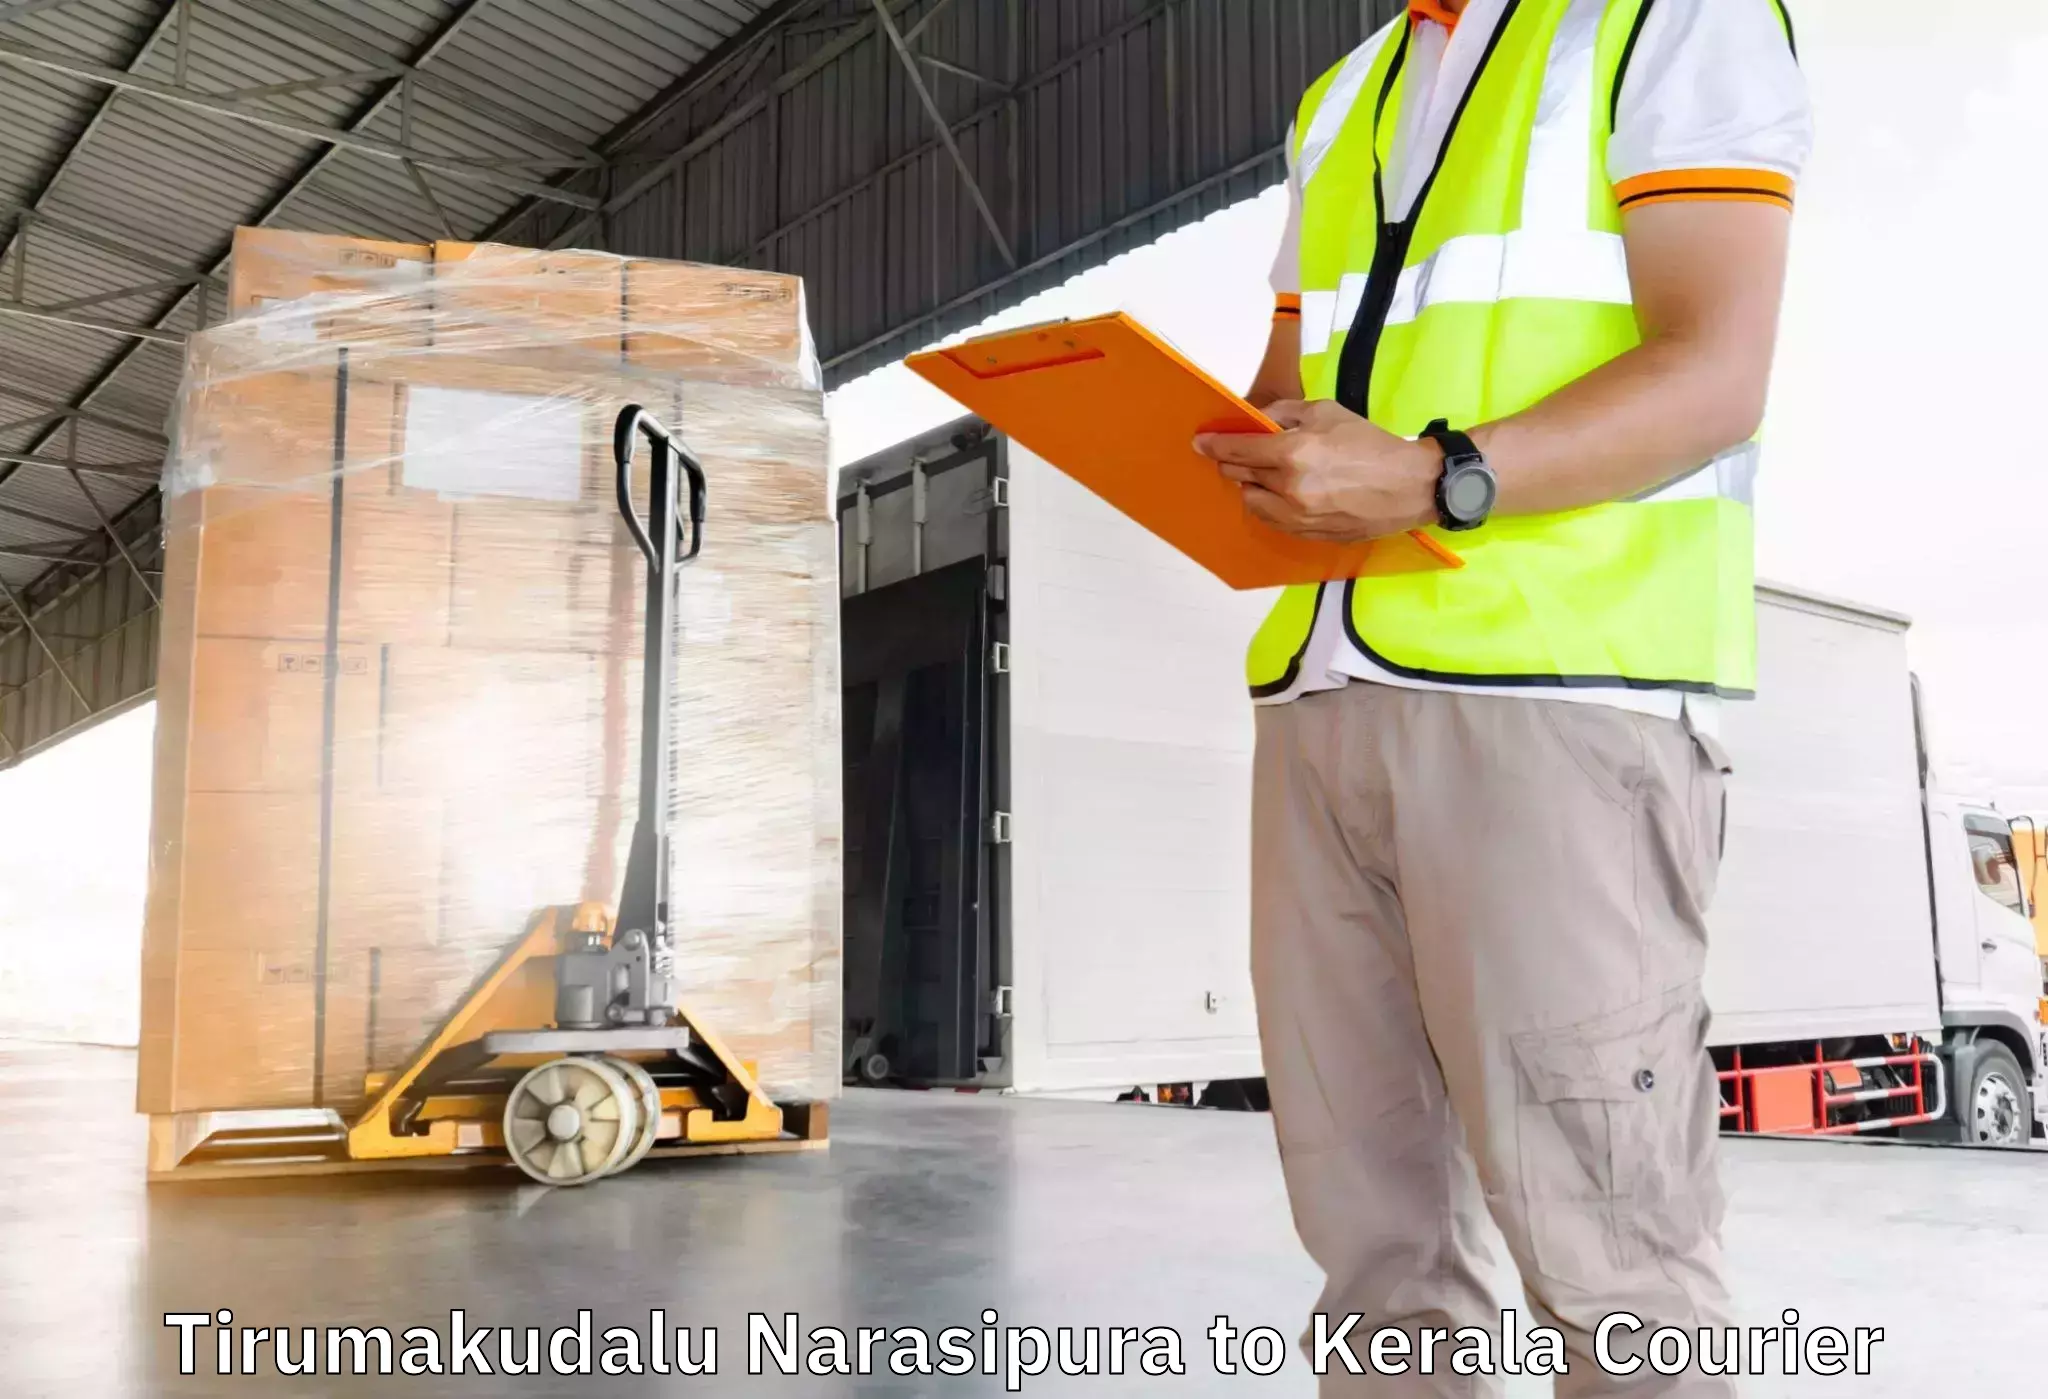 Trusted moving company Tirumakudalu Narasipura to Pala